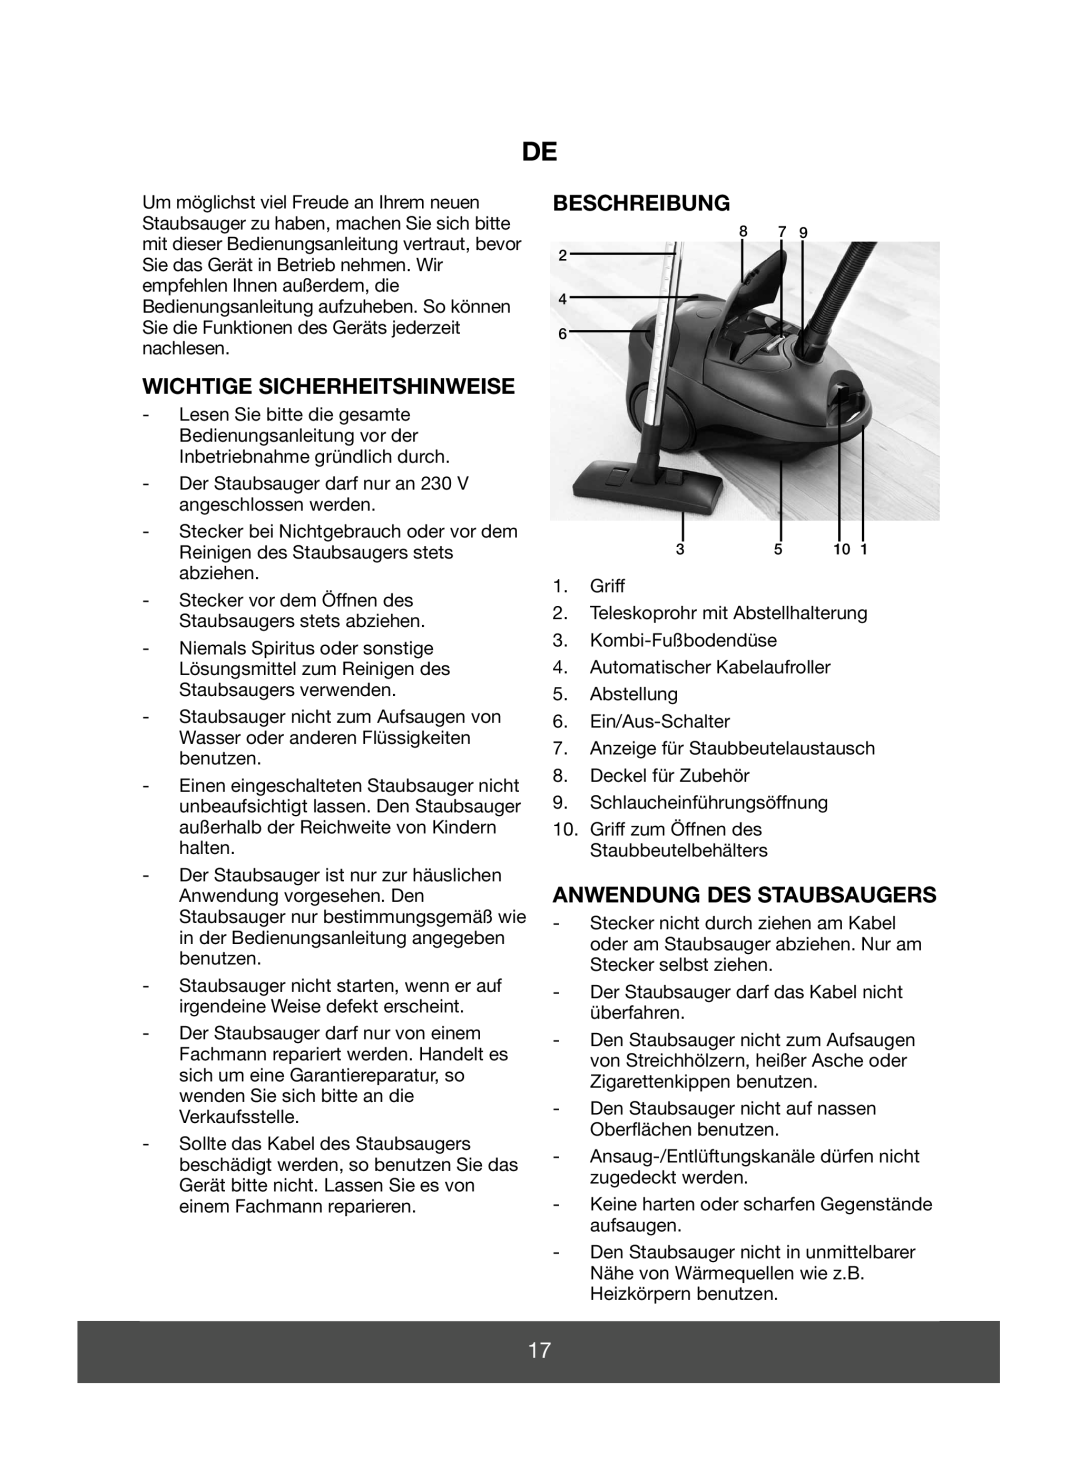 Melissa 640-089 manual Wichtige Sicherheitshinweise, Beschreibung, Anwendung Des Staubsaugers 